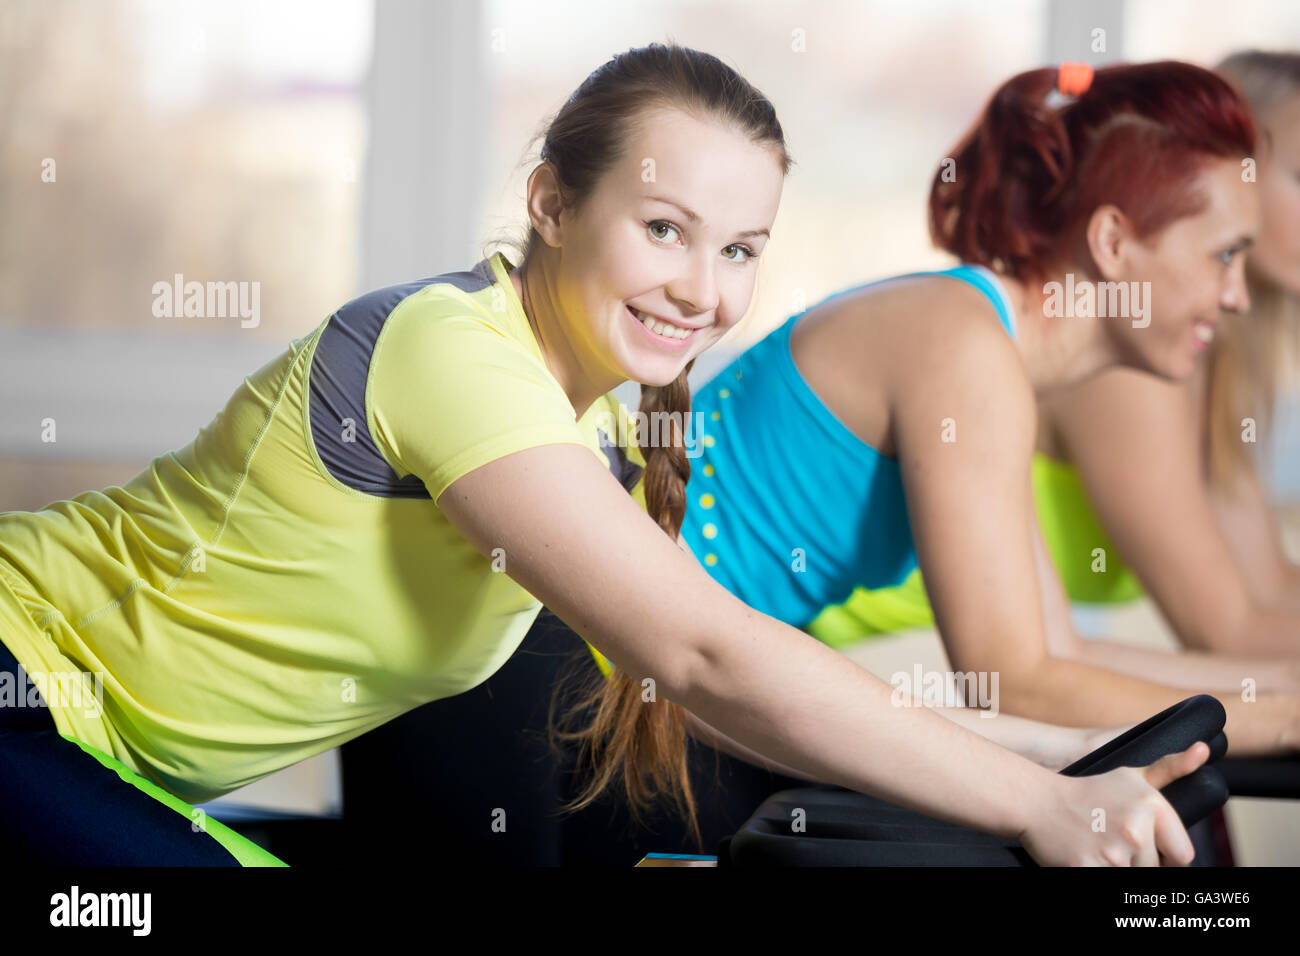 La pratica di fitness, gruppo di belle femmine allegro in bicicletta nel club sportivo, facendo esercizi cardio per dimagrire, in fase di riscaldamento Foto Stock